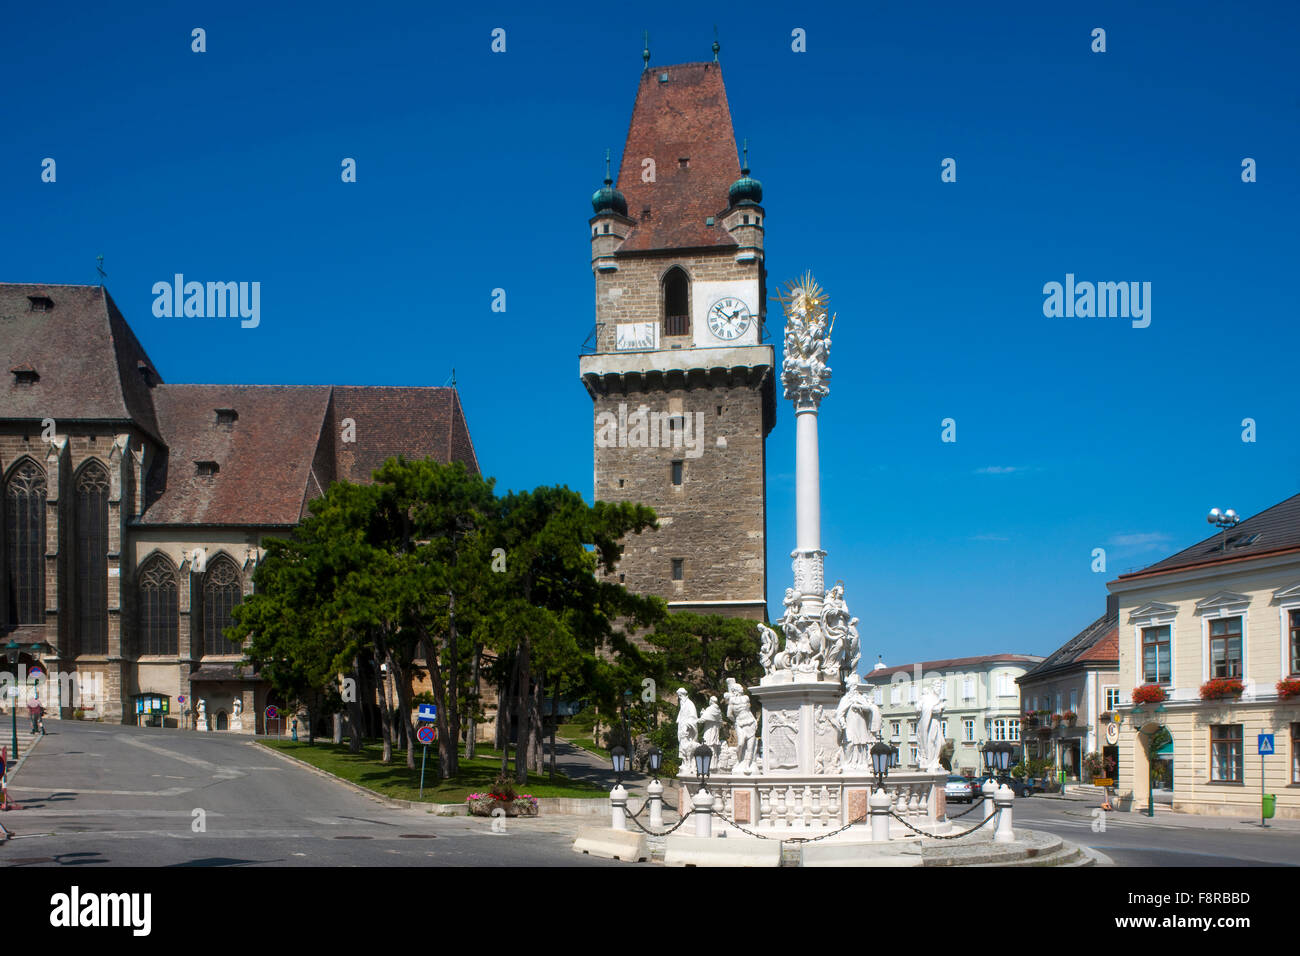 Europa, Österreich, Niederösterreich, Perchtoldsdorf, Pfarrkirche und Wehrturm a Perchtoldsdorf Der Turm ist der grösste erhal Foto Stock